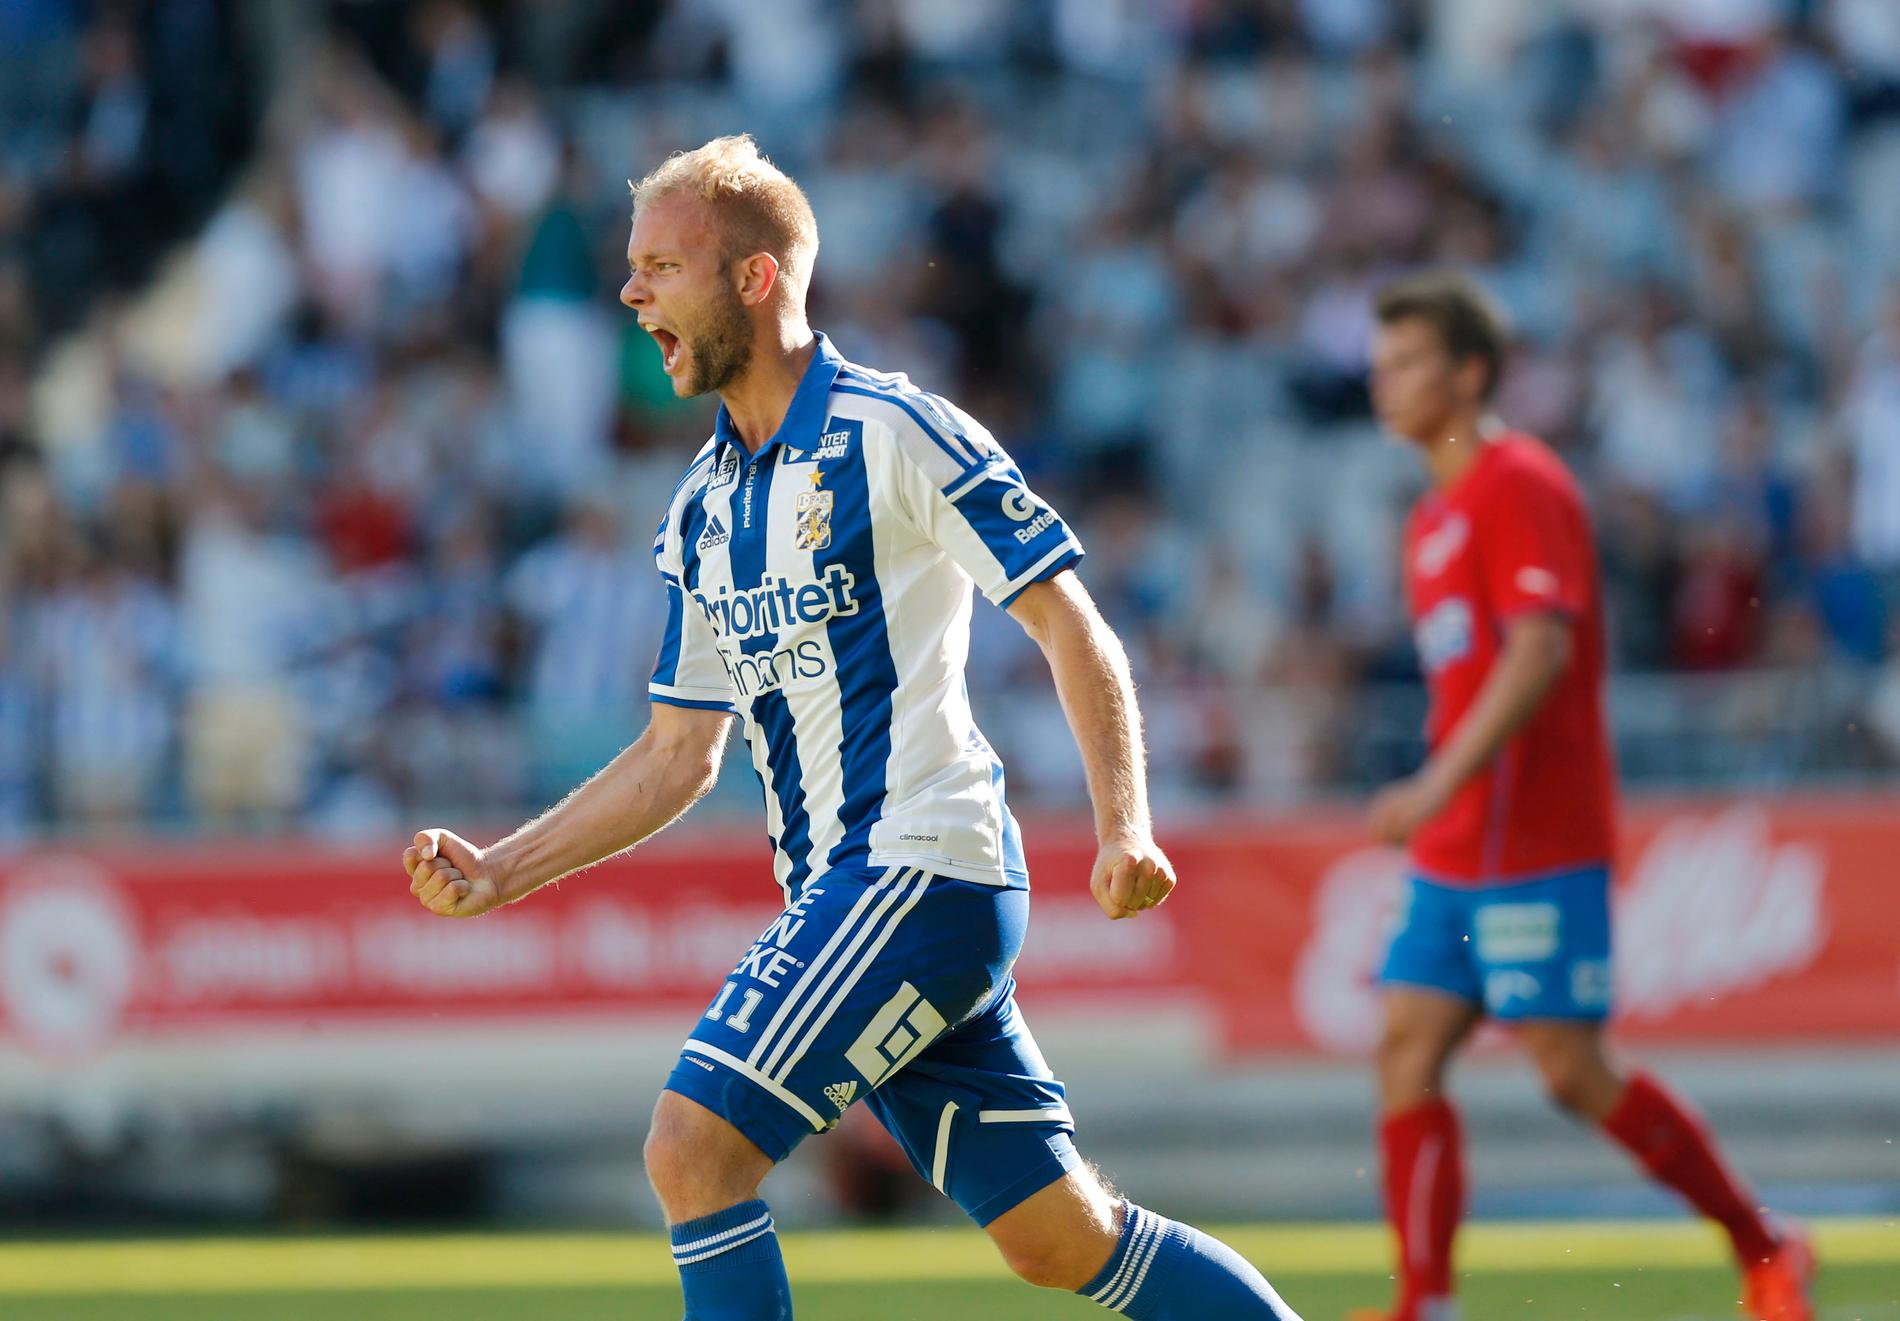 Senast Söder spelade i IFK Göteborg var 2014.